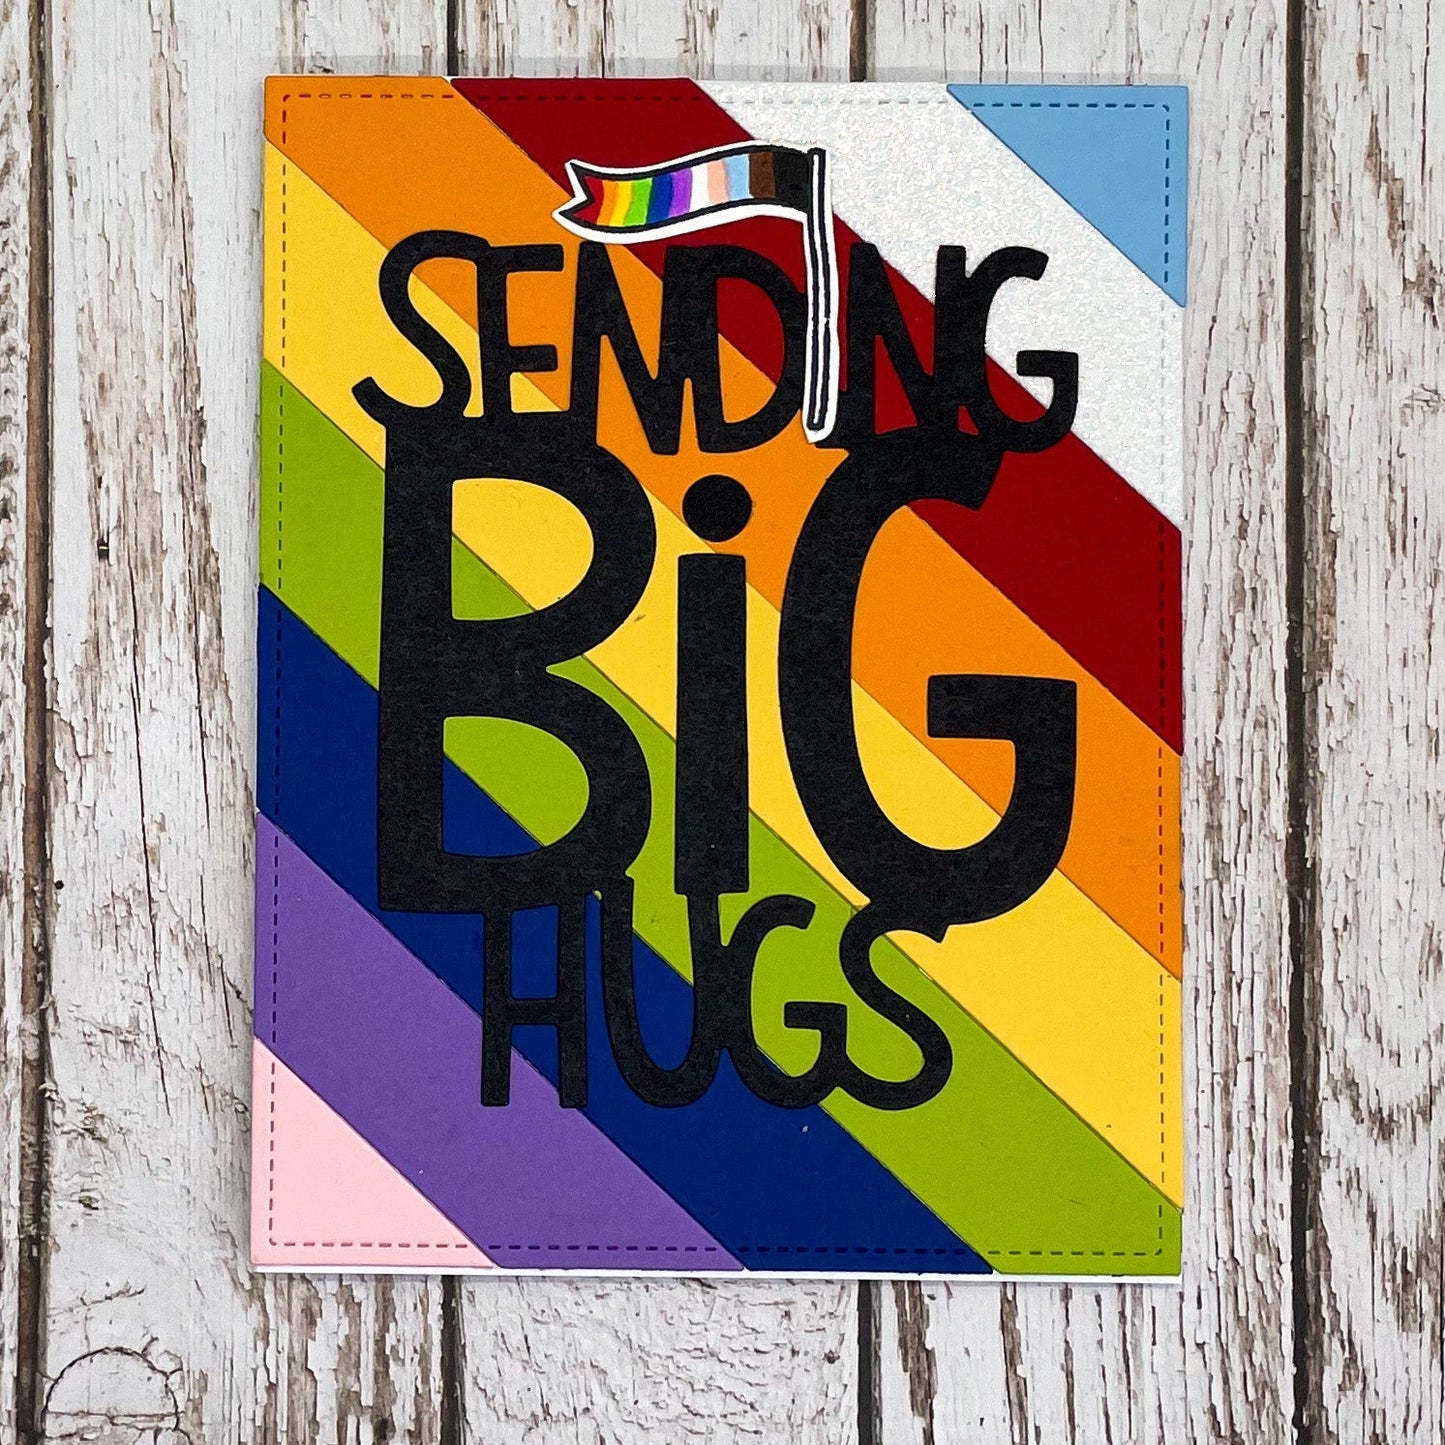 Sending Big Hugs PRIDE LGBT+ Rainbow Handmade Greetings Card